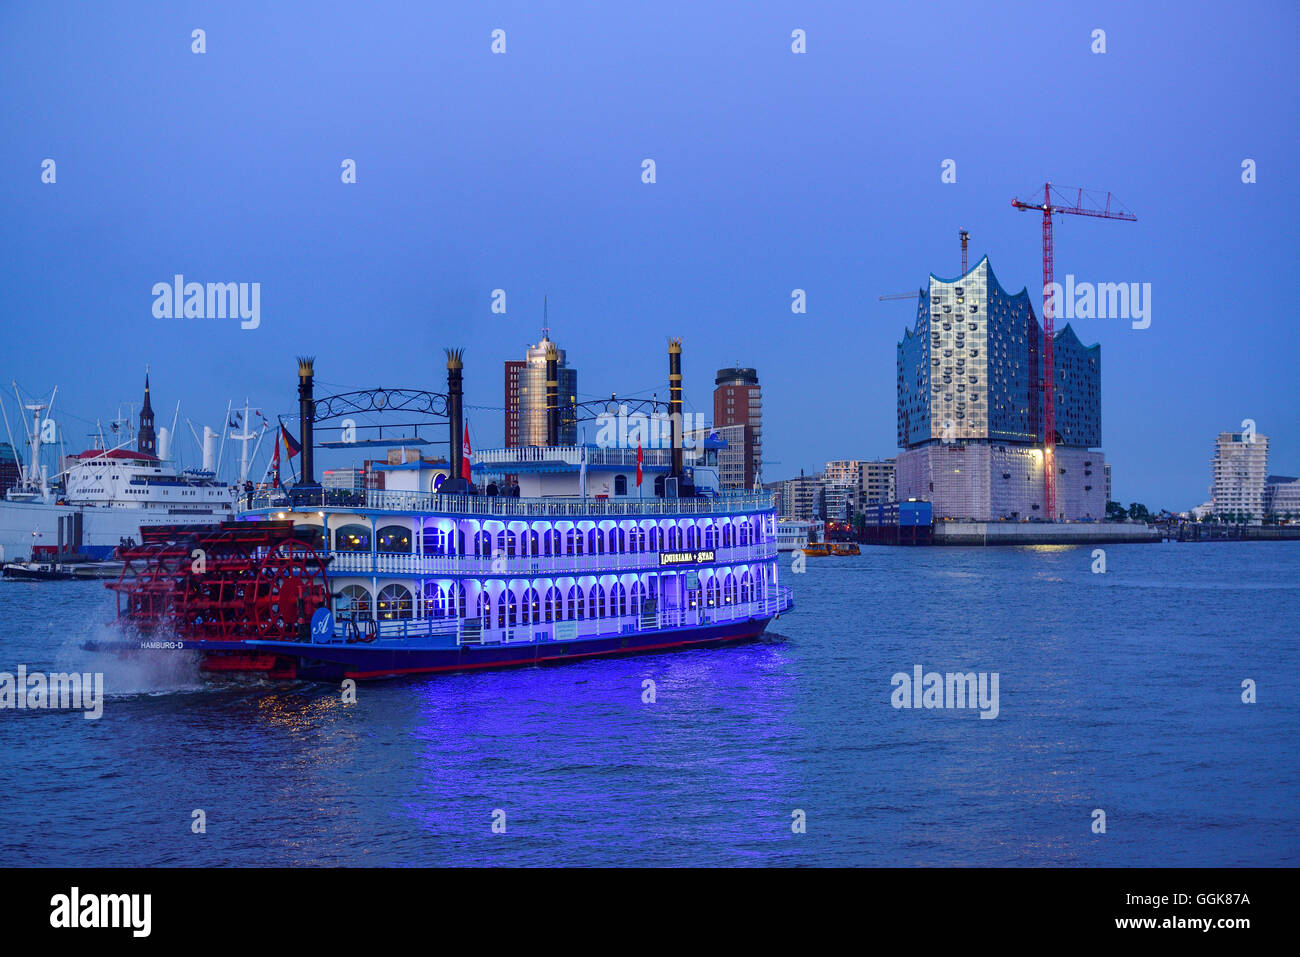 Beleuchtete Paddel Schiff Louisiana Star Segeln auf der Elbe in Richtung Kehrwiderspitze und Elbphilharmonie, Hamburg, Deutschland Stockfoto